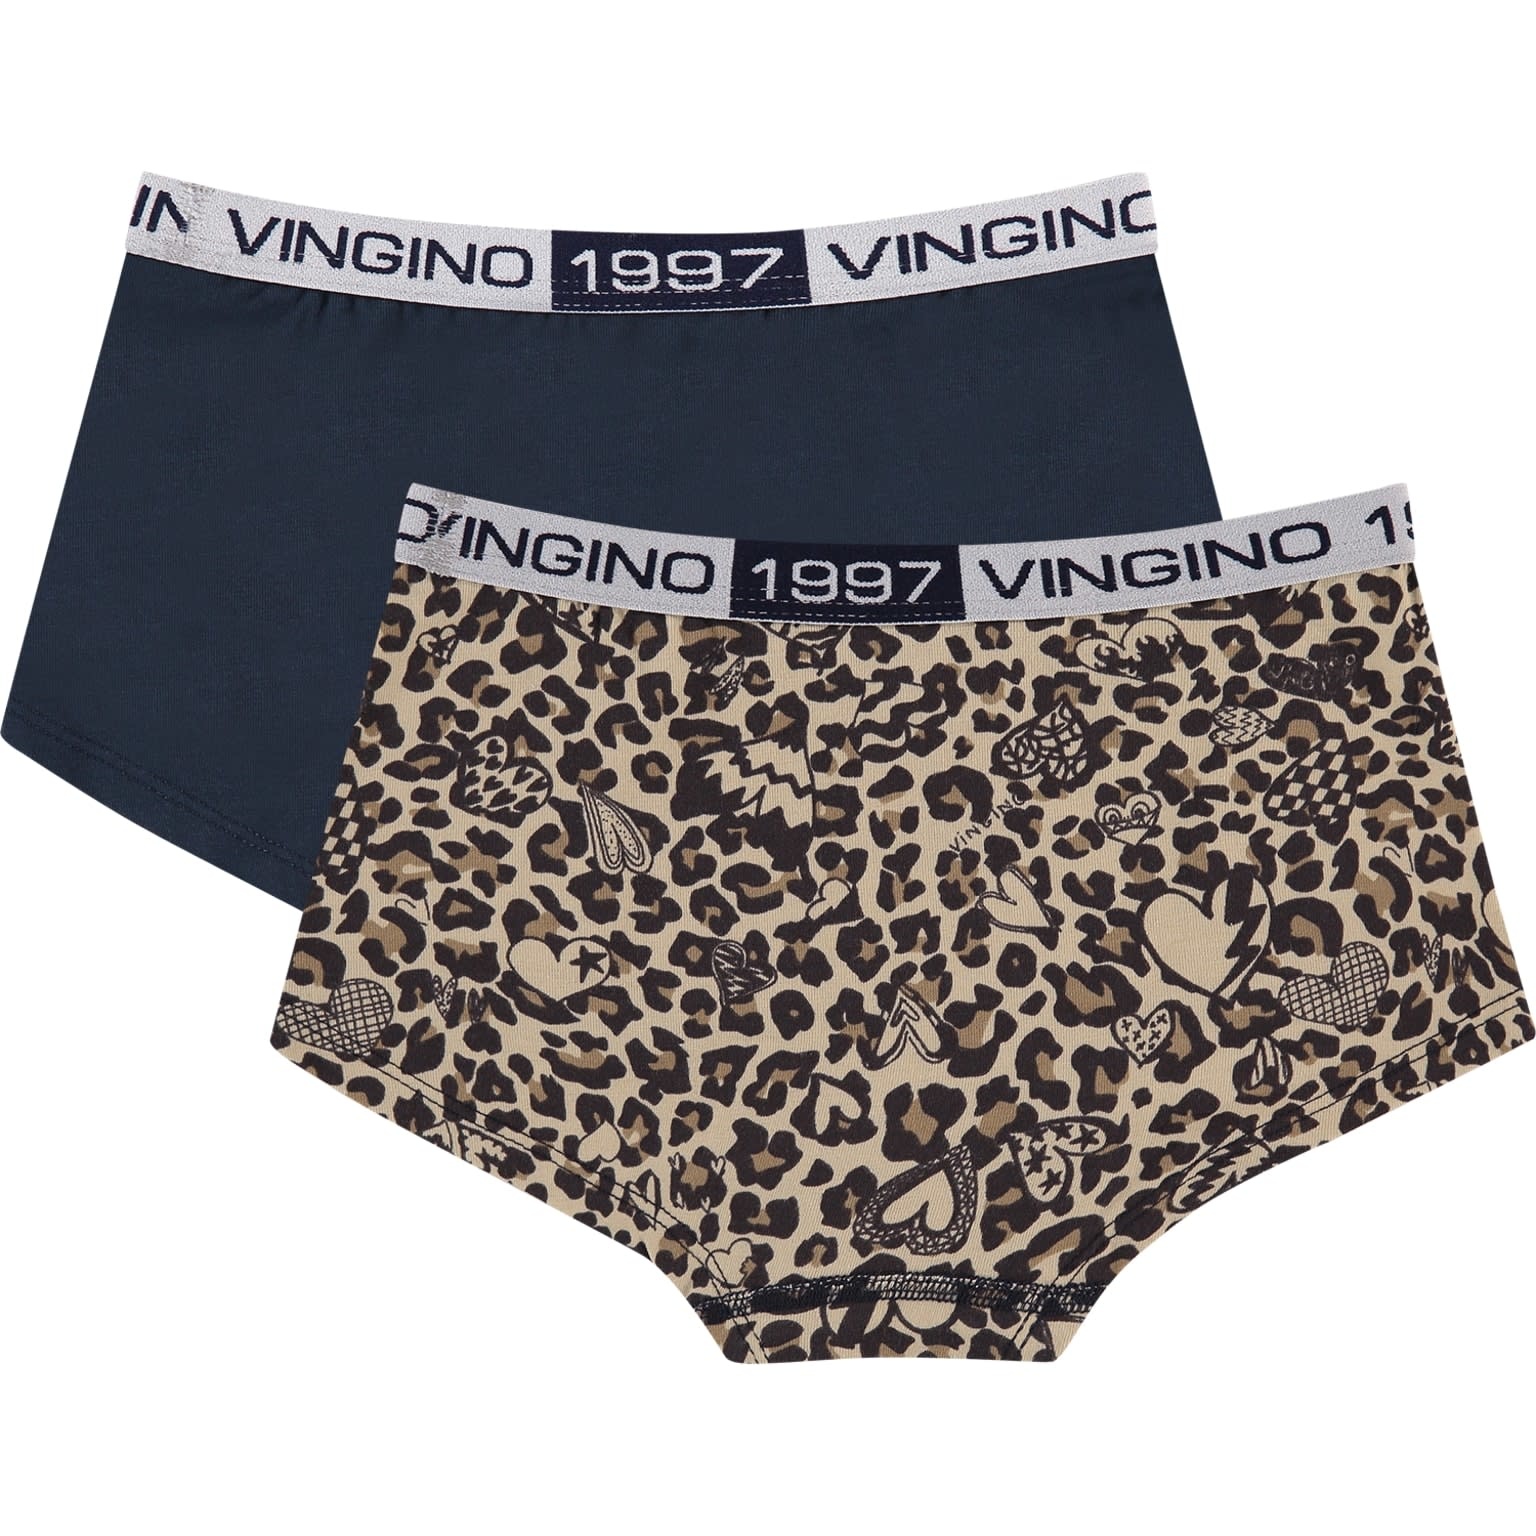 Meevoelen boeren handtekening Vingino meiden ondergoed 2-pack boxers Leopard Love - FiNo Kids